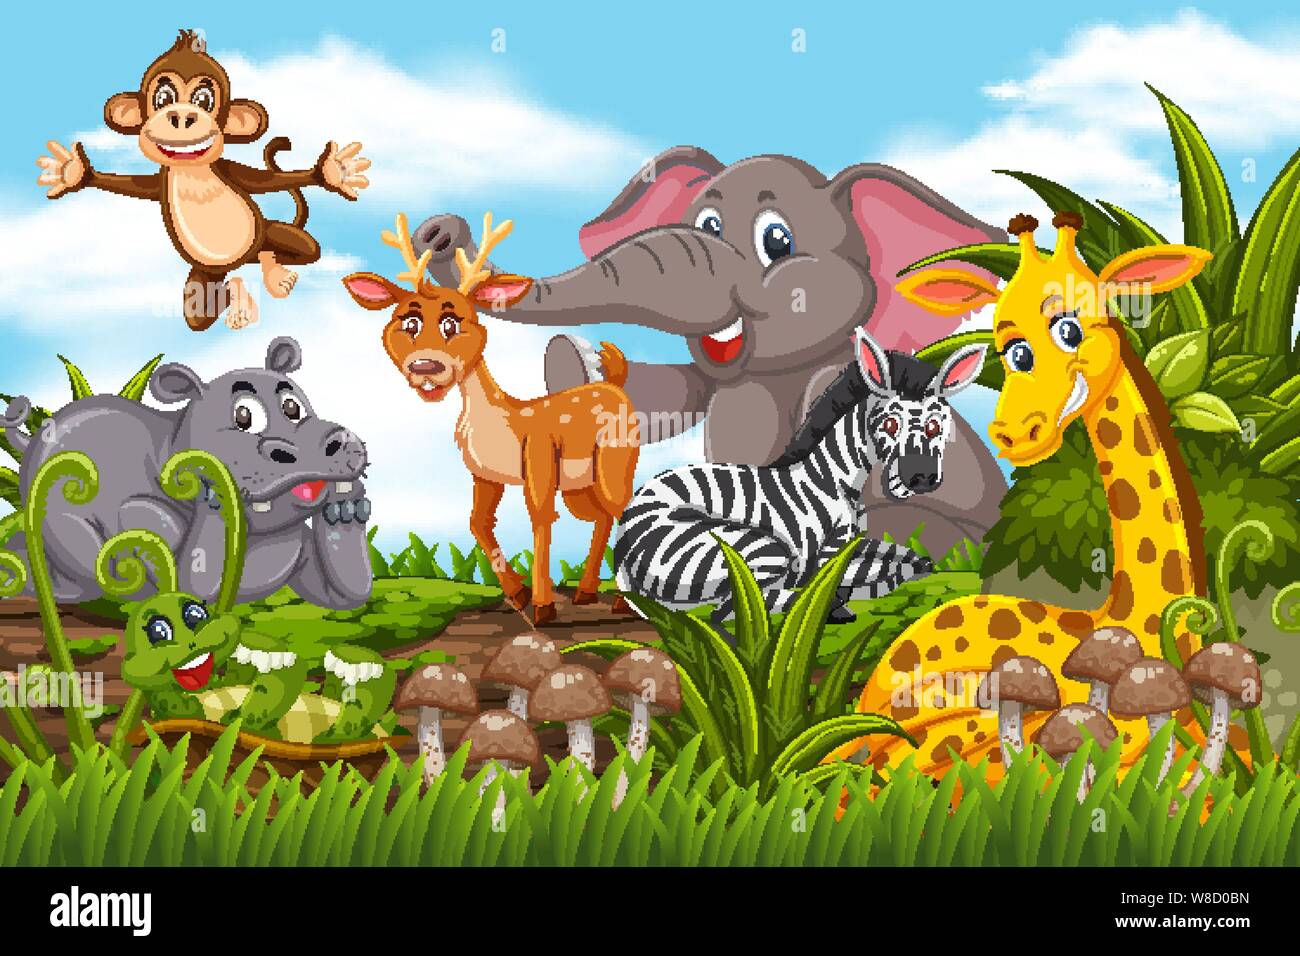 Glückliche Tiere im Dschungel Szene Abbildung Stock Vektor